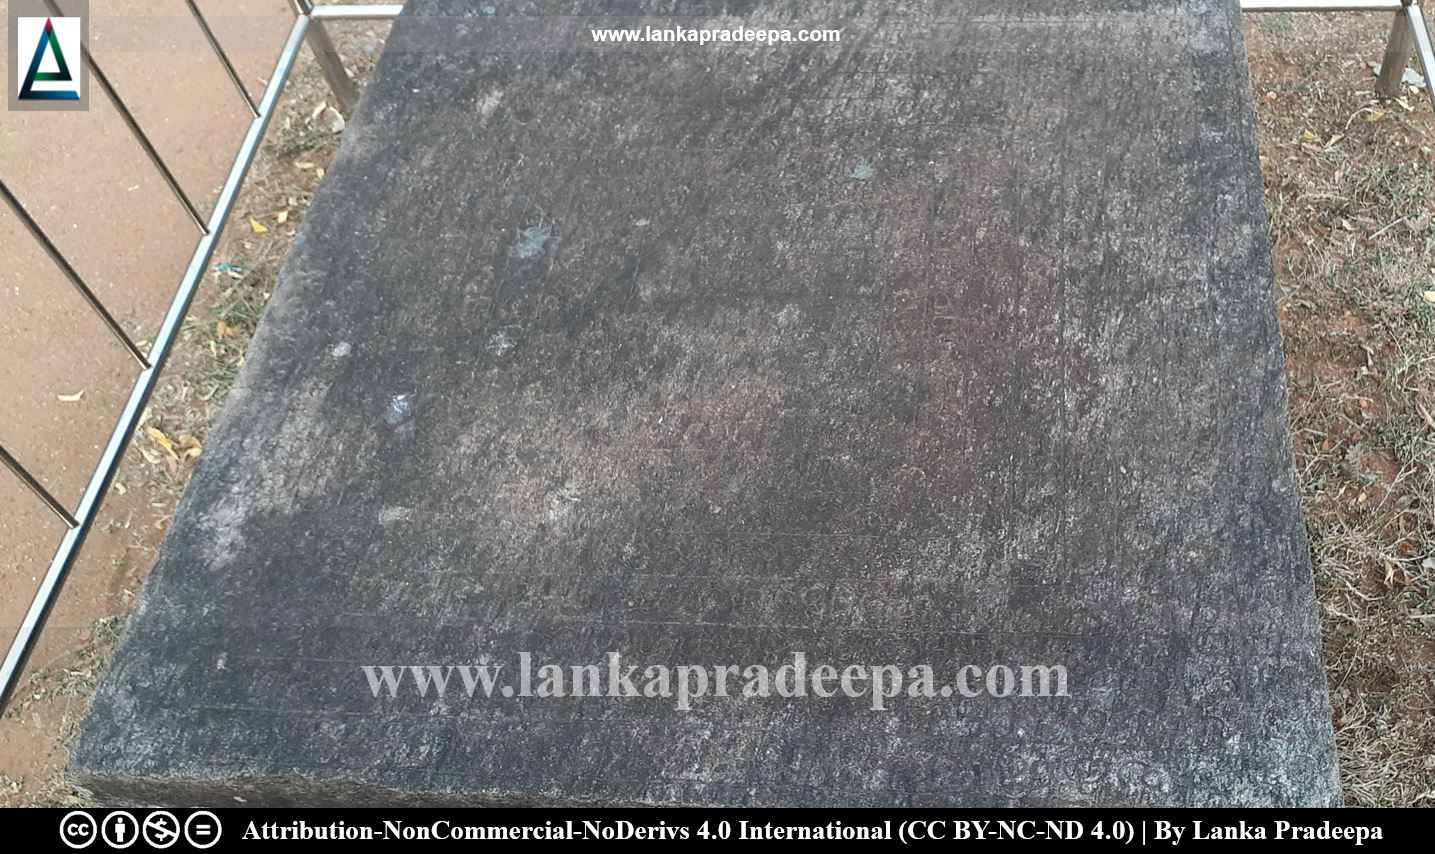 Kalinga Park Stone Seat Inscription